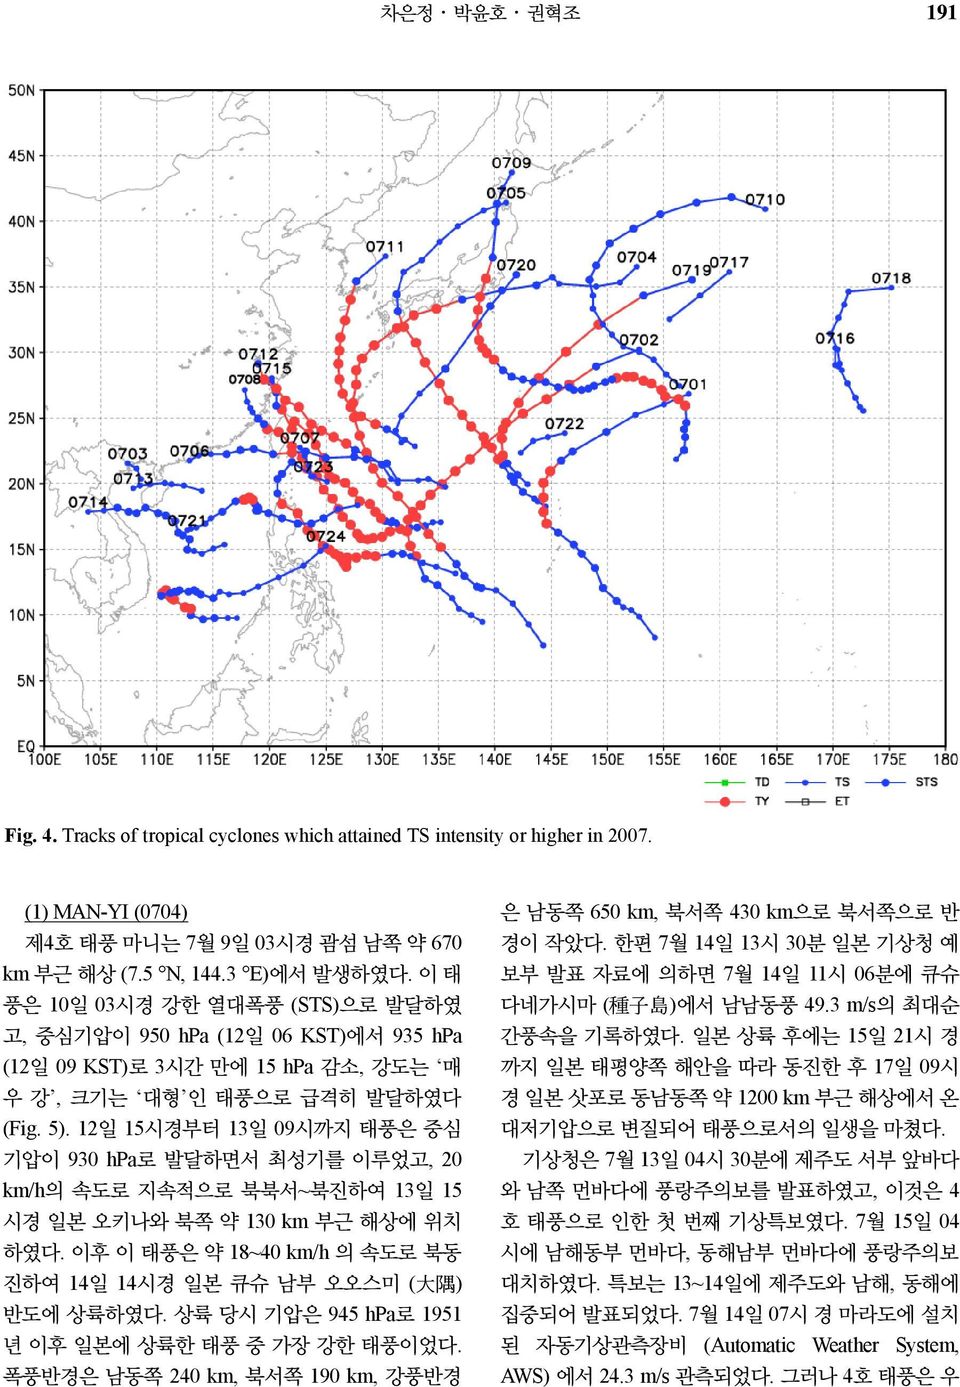 12일 15시경부터 13일 09시까지 태풍은 중심 기압이 930 hpa로 발달하면서 최성기를 이루었고, 20 km/h의 속도로 지속적으로 북북서~북진하여 13일 15 시경 일본 오키나와 북쪽 약 130 km 부근 해상에 위치 하였다.